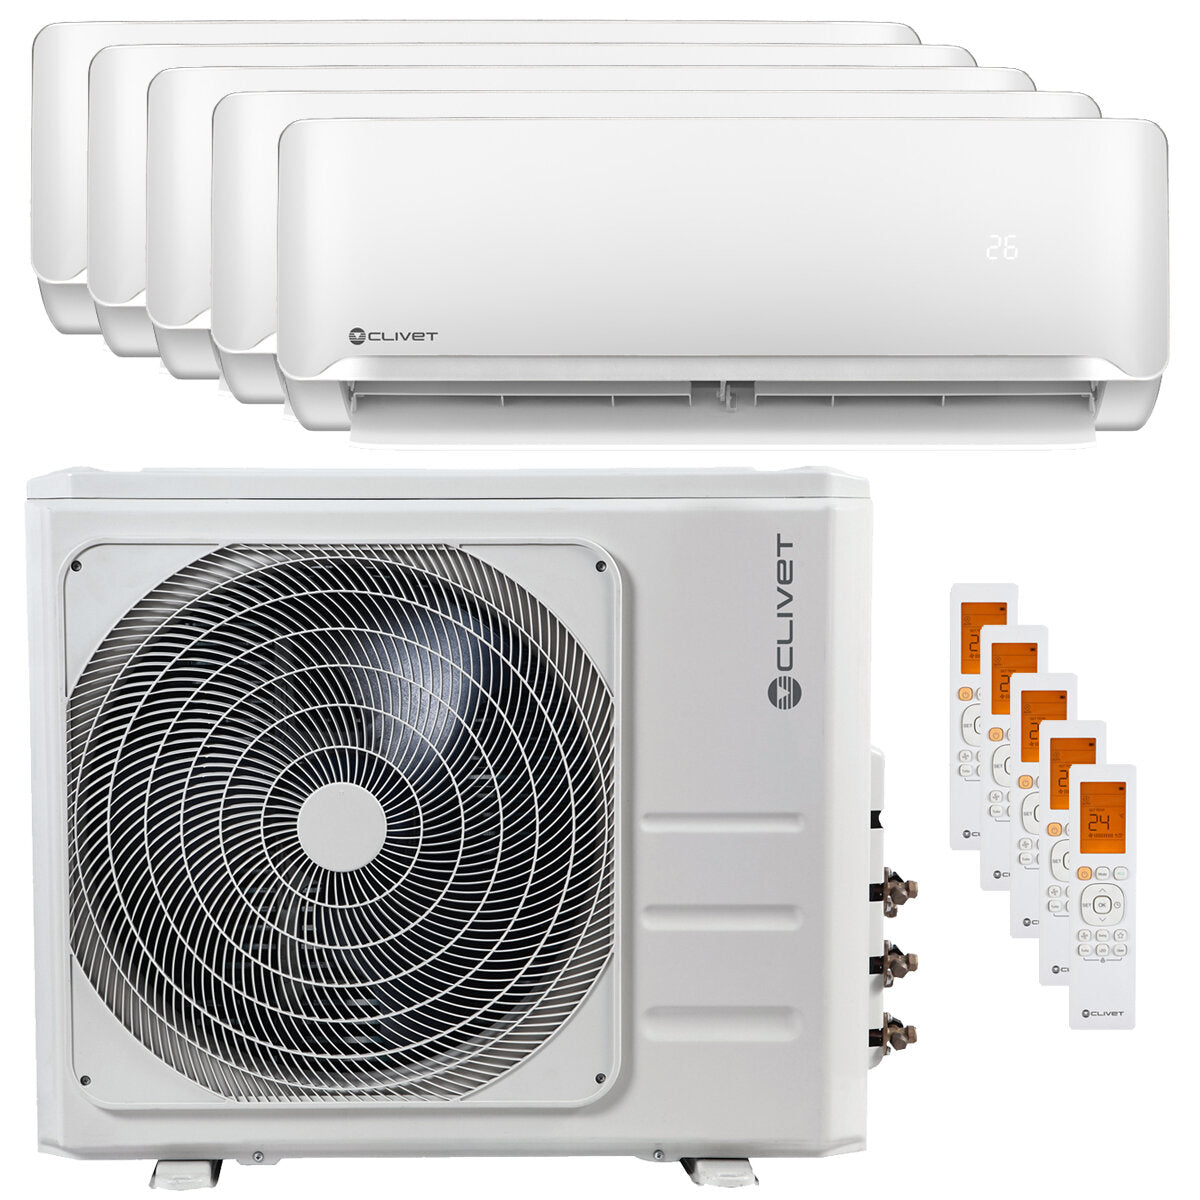 Air conditioner Clivet Essential 2 penta split 9000 + 9000 + 9000 + 9000 + 18000 BTU inverter A ++ outdoor unit 12.3 kW